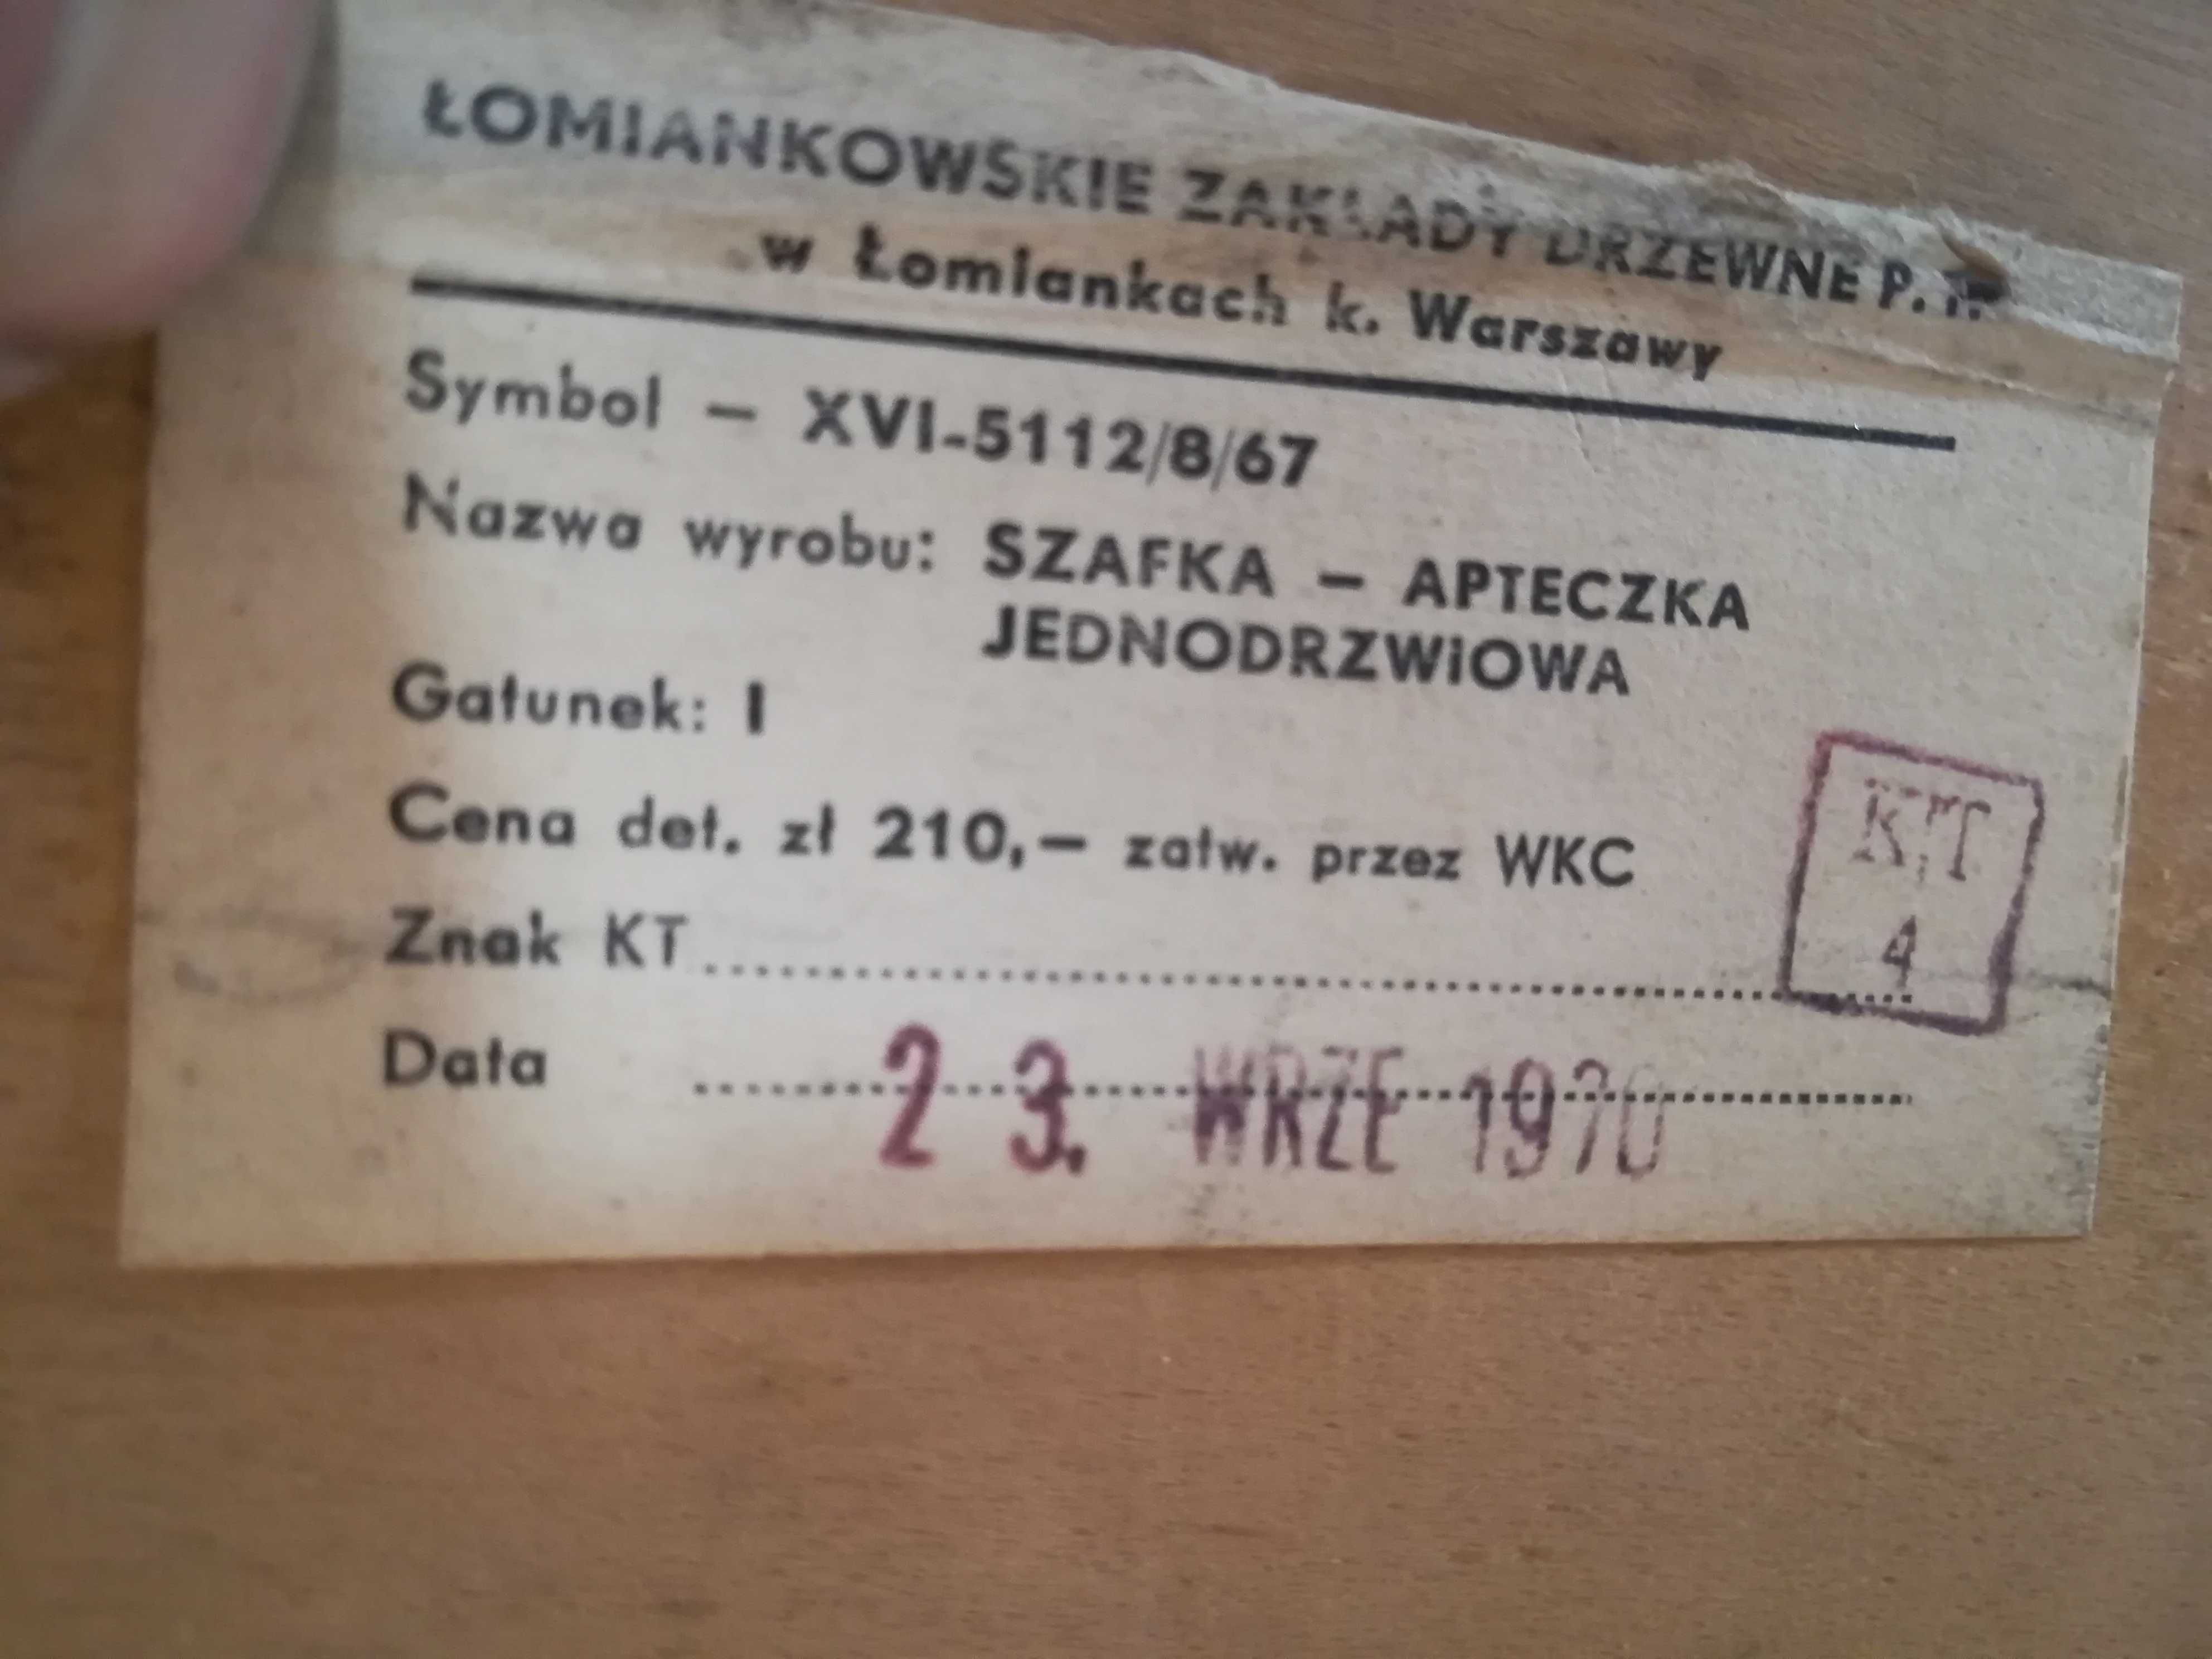 Drewniana szafka apteczka jednodrzwiowa medyczna
Łomianki PRL  1970 r.